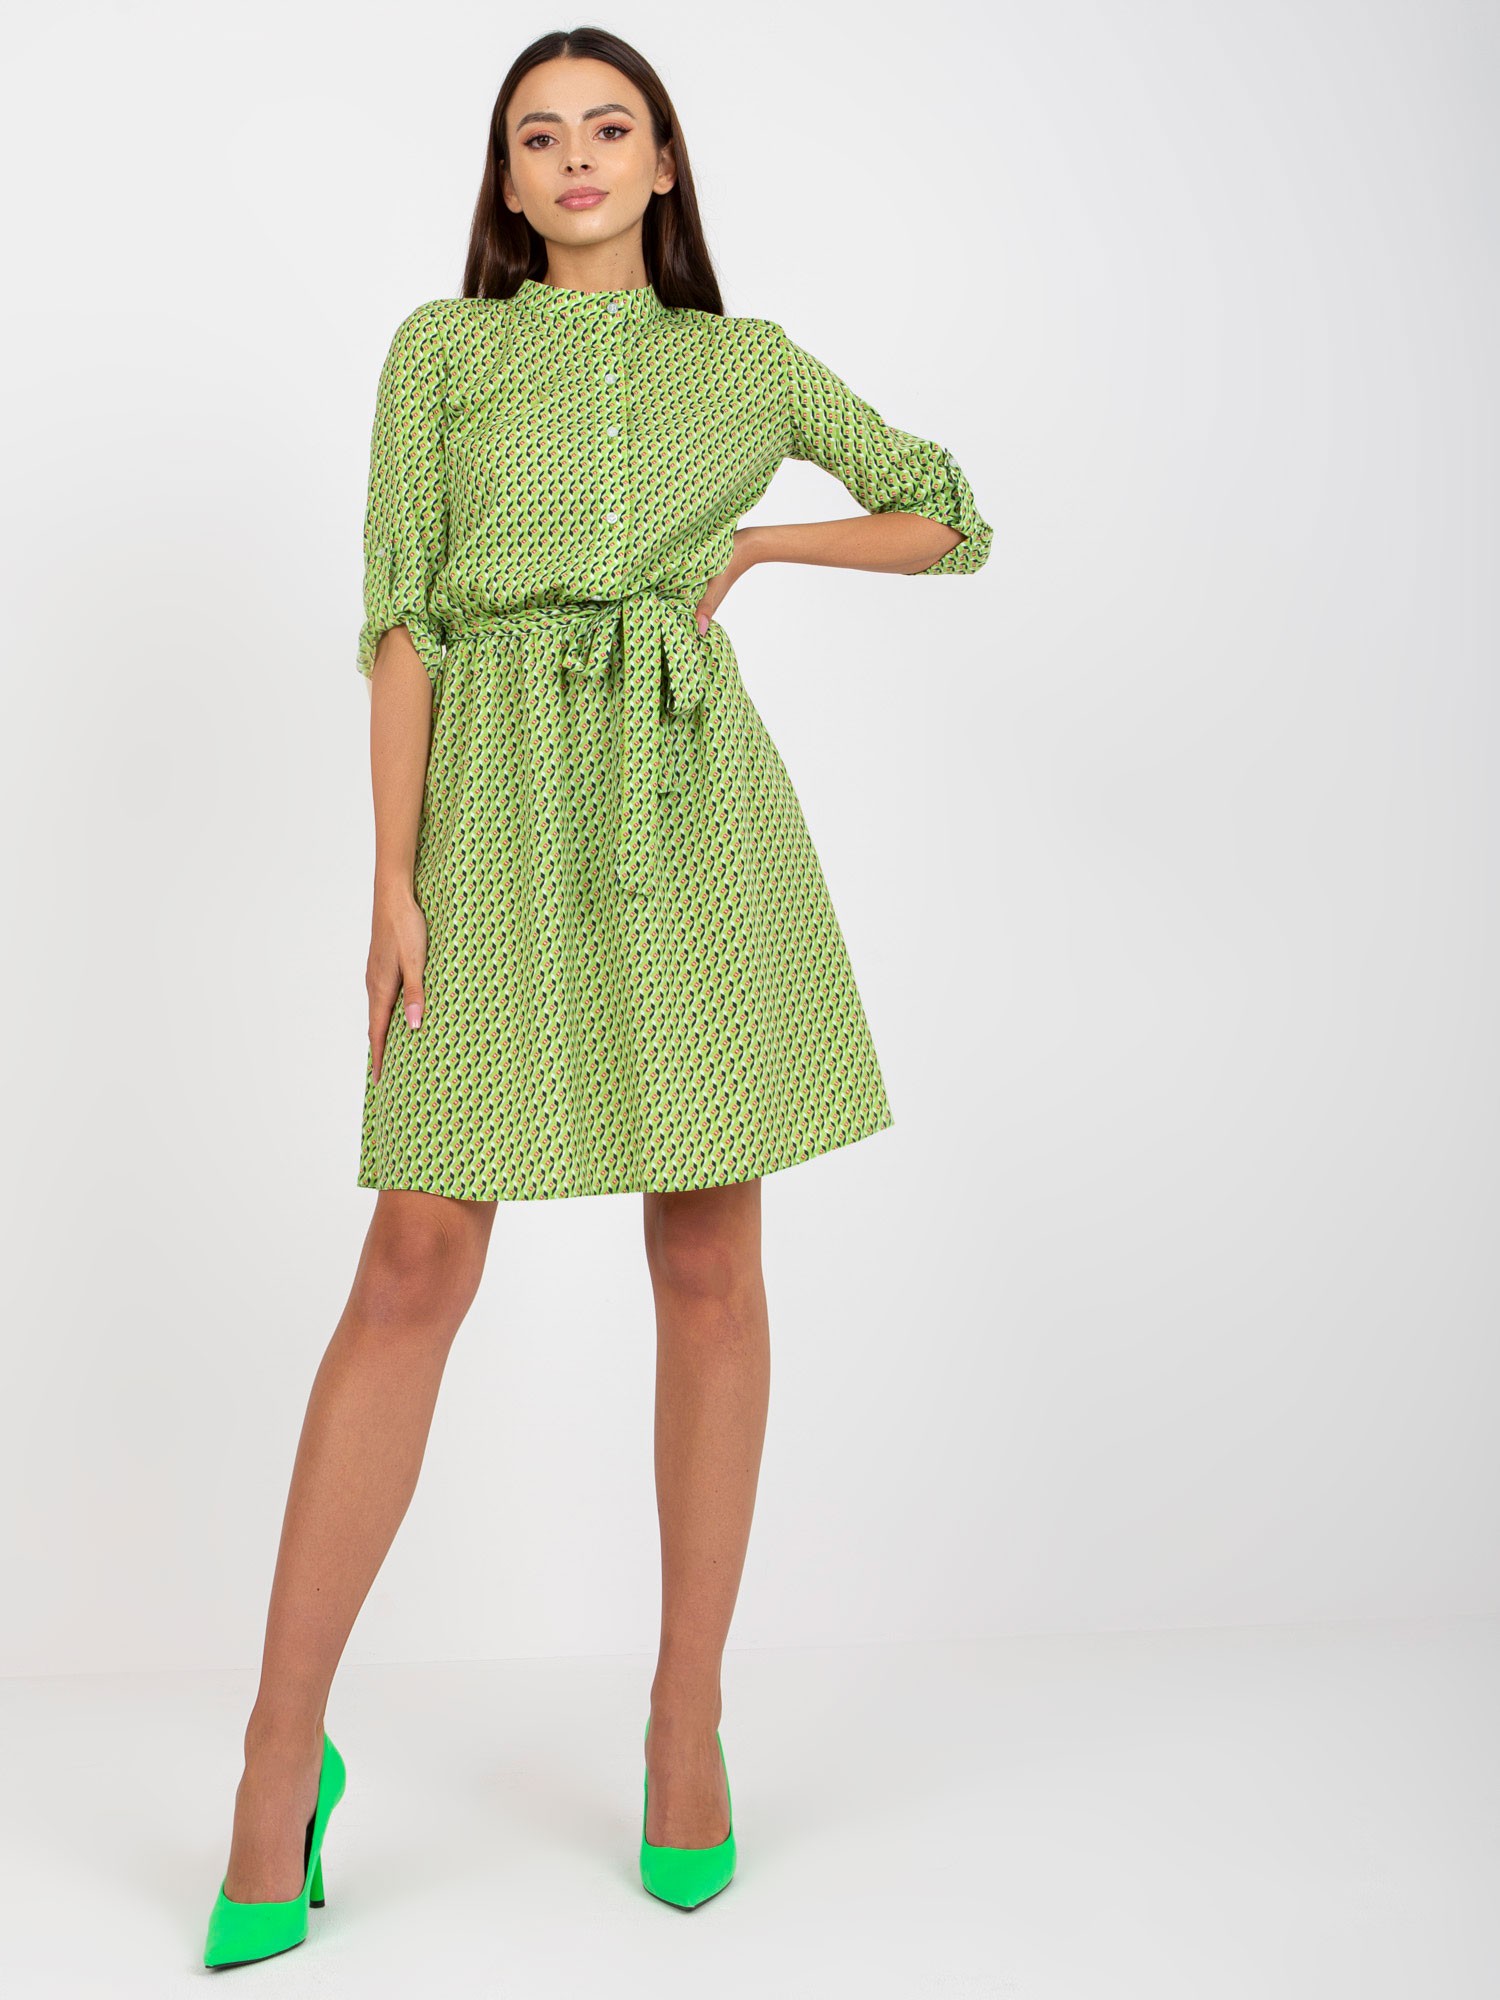 Zelené vzorované košeľové šaty -LK-SK-508938.28X-green Veľkosť: 36